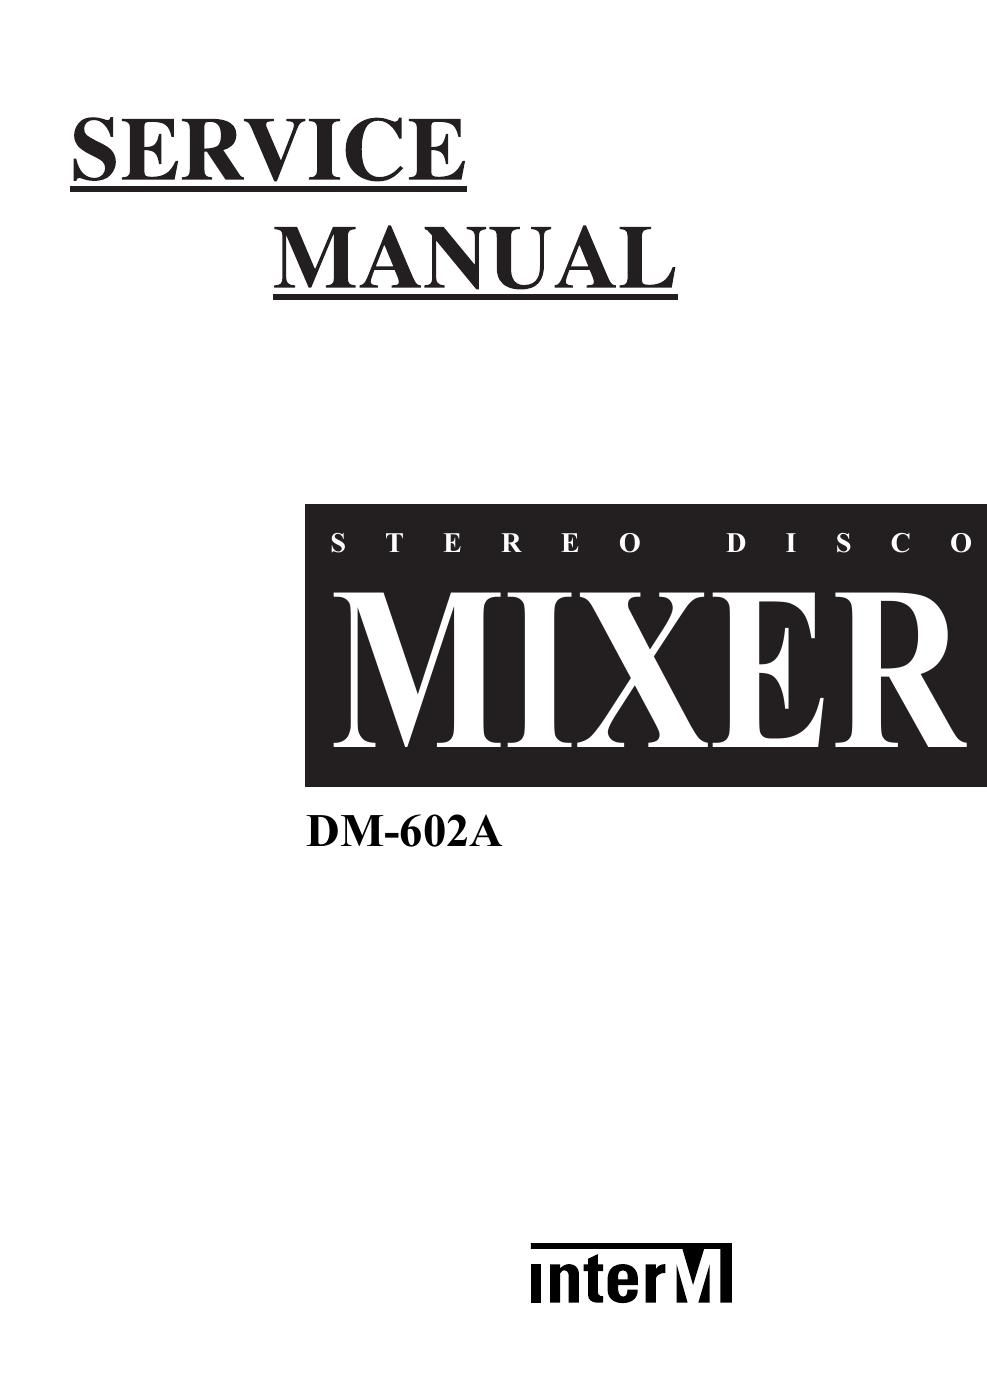 interm dm 602a mixer